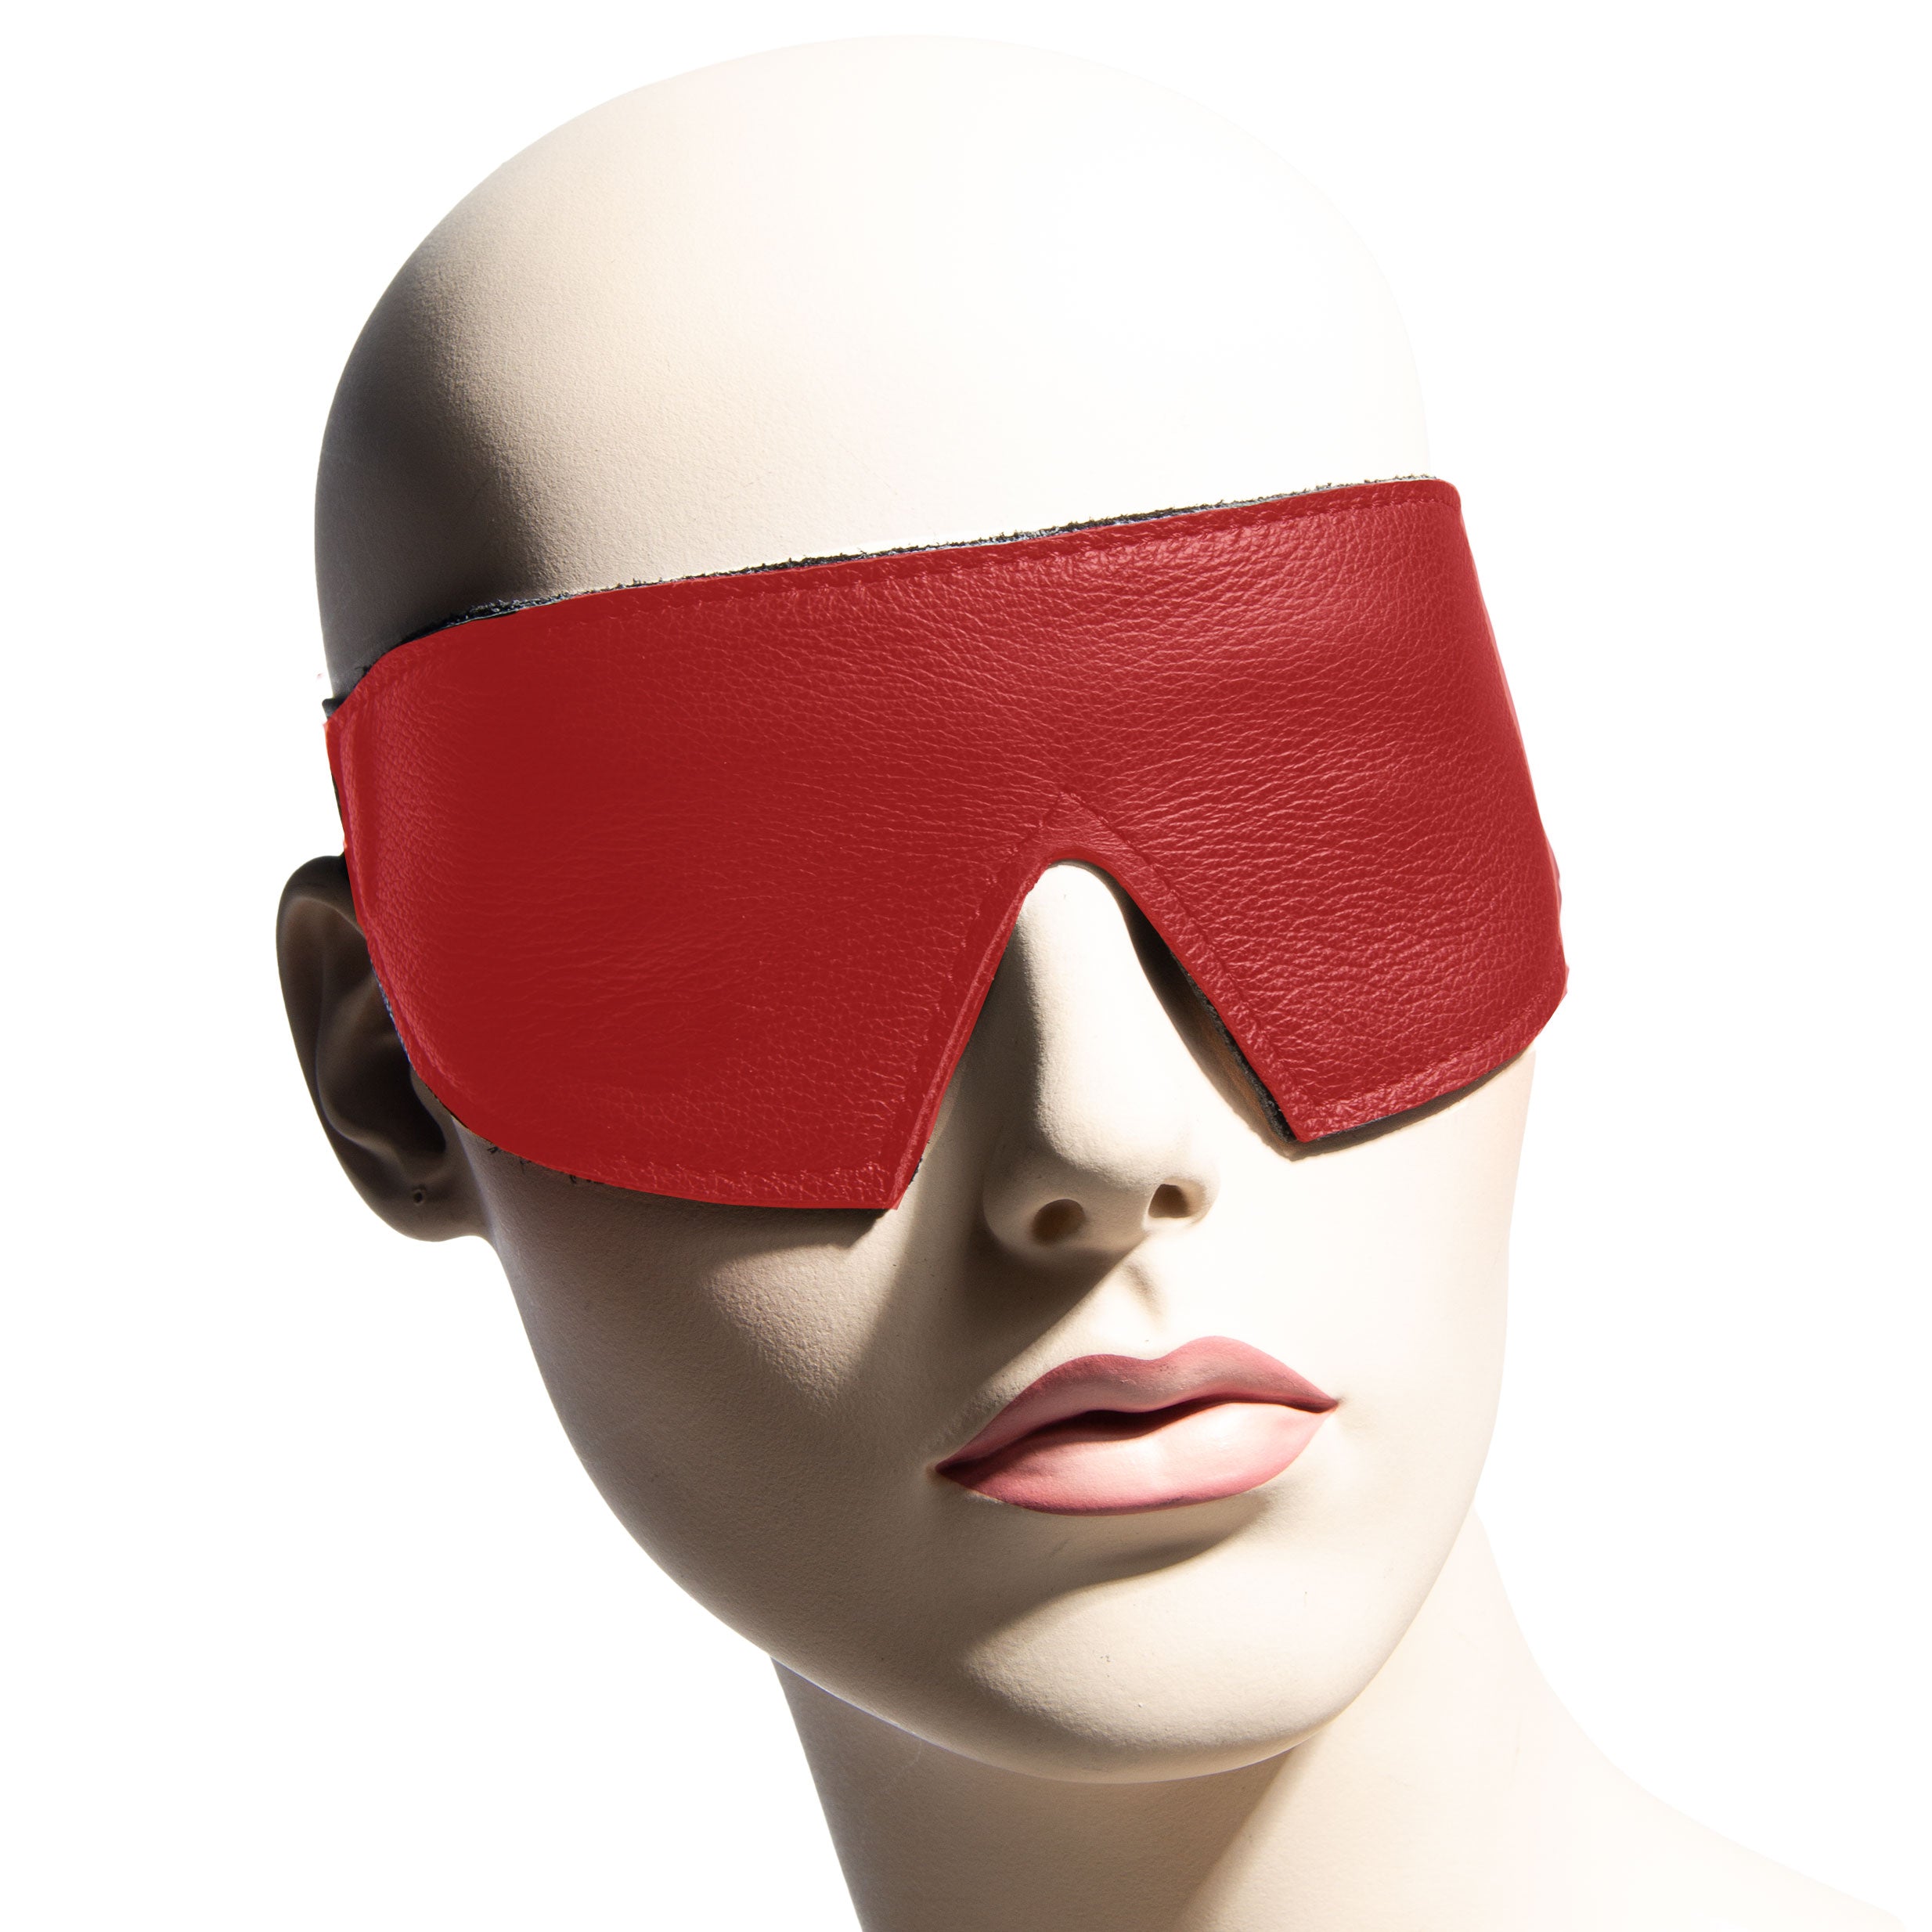 Luxury Leather Bondage Blindfold Red on Model